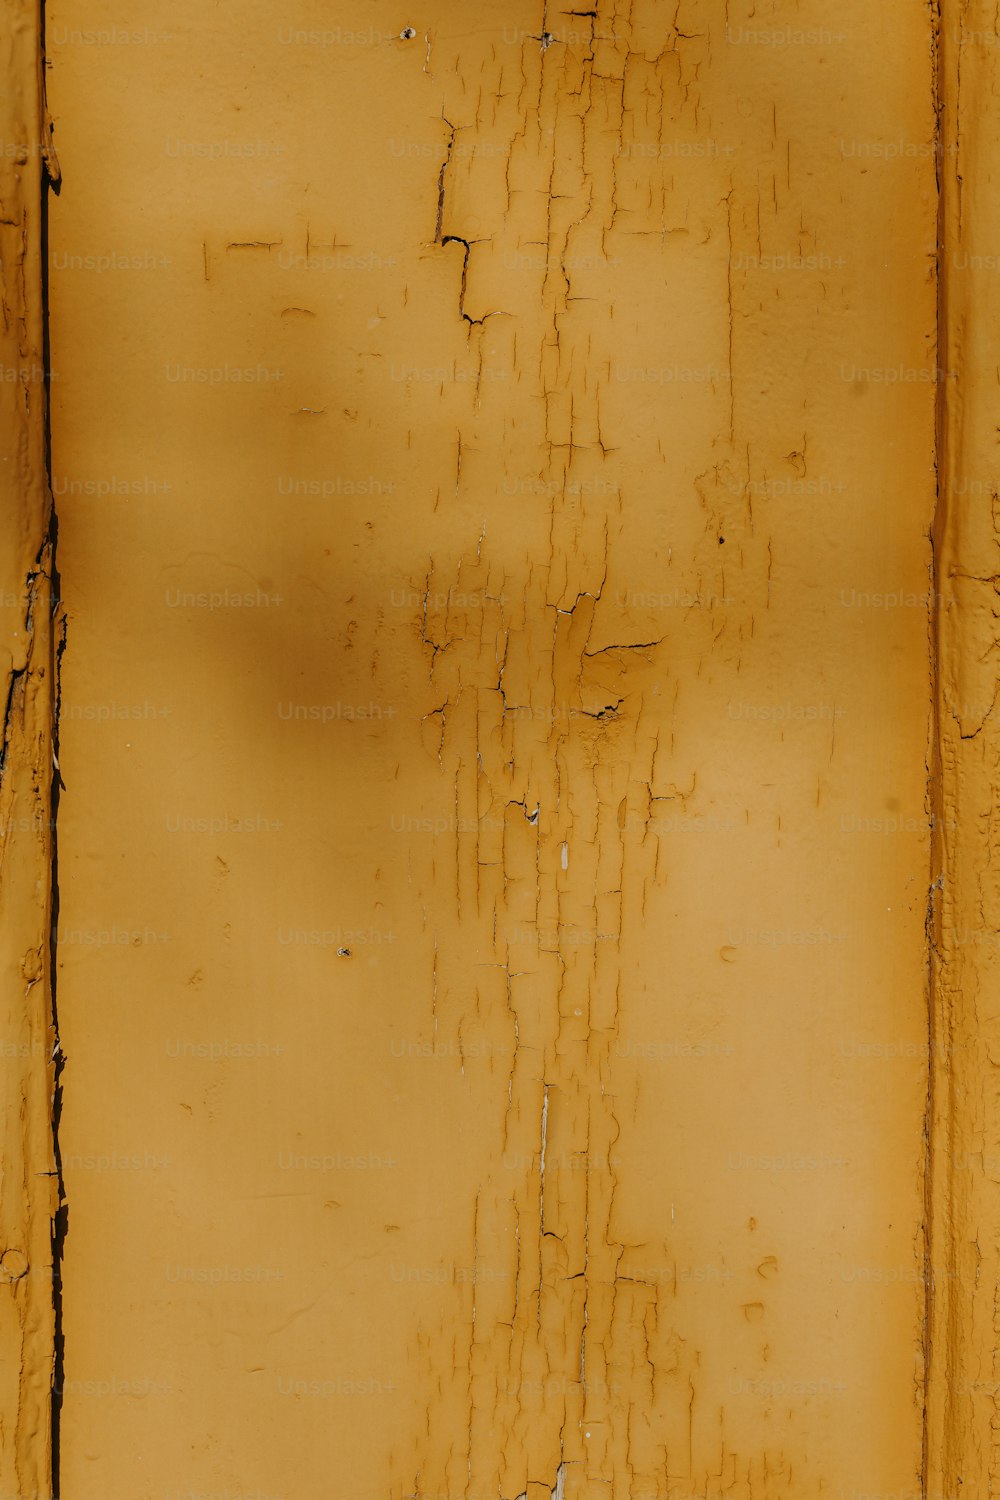 eine gelbe Wand mit abblätternder Farbe darauf